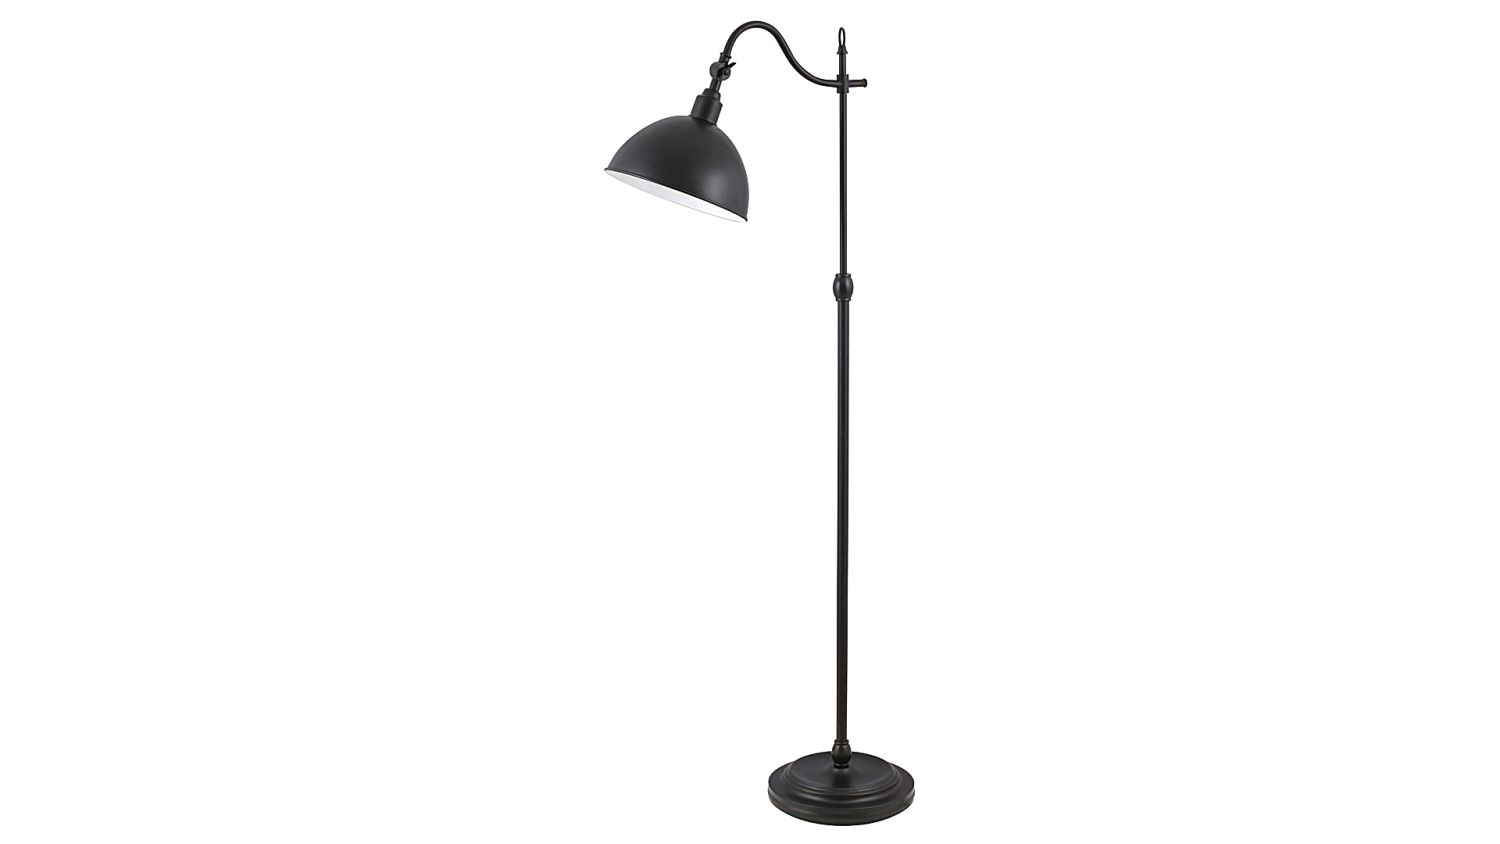 Schwarze Stehlampe Schalter schwenkbar H:135cm